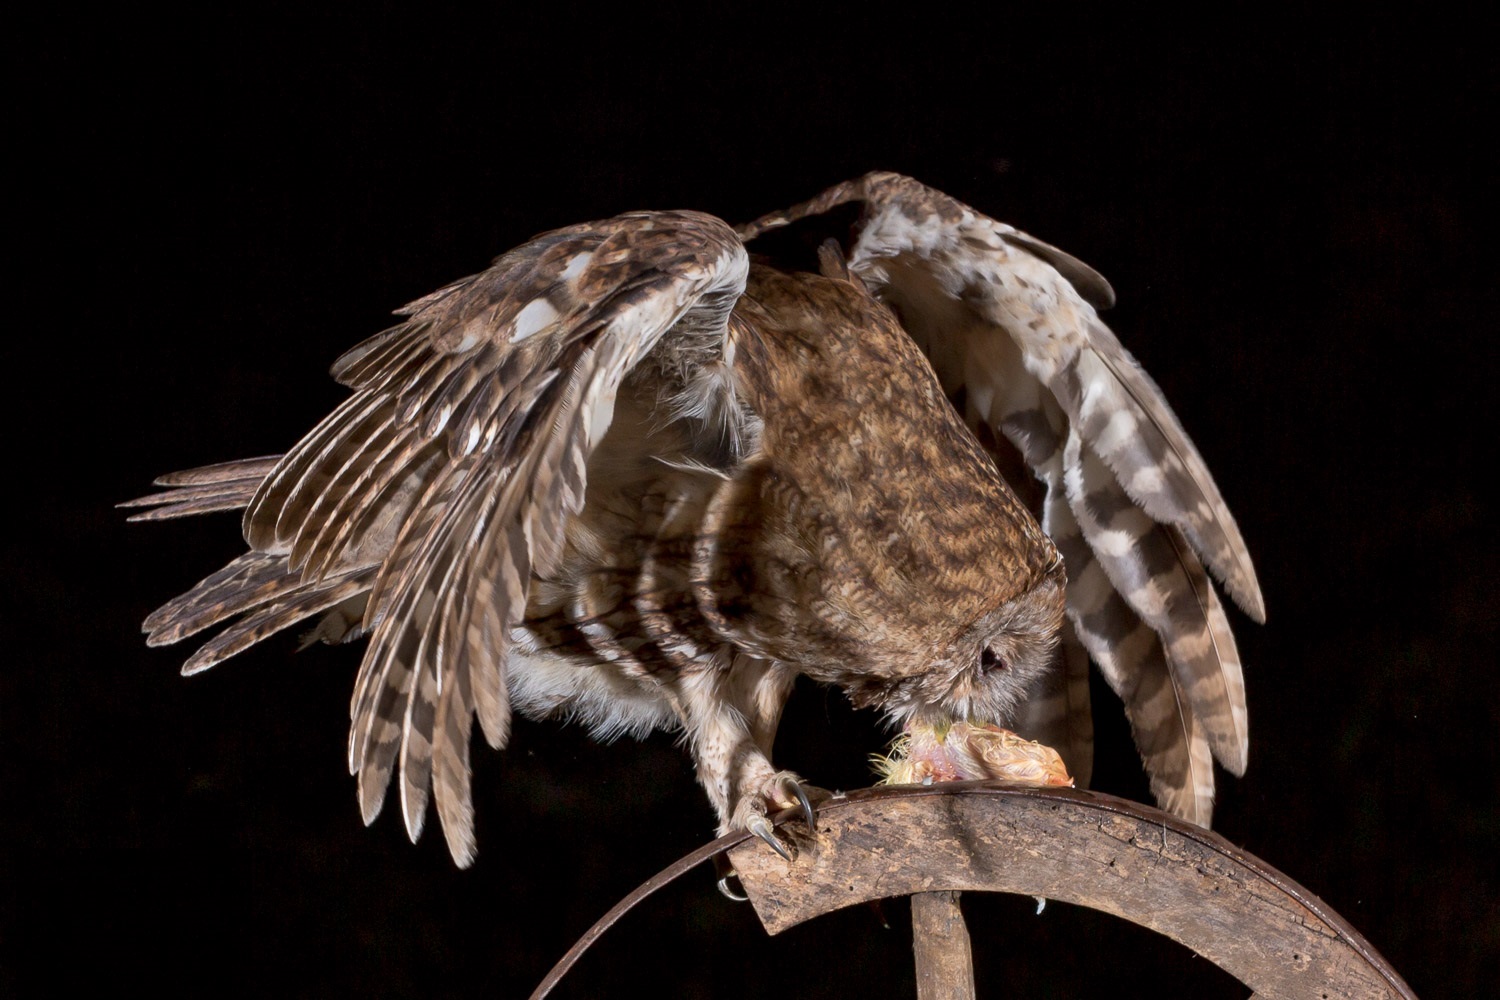 Gray Tawny jedzący ucztę pozostawioną przez fotografa